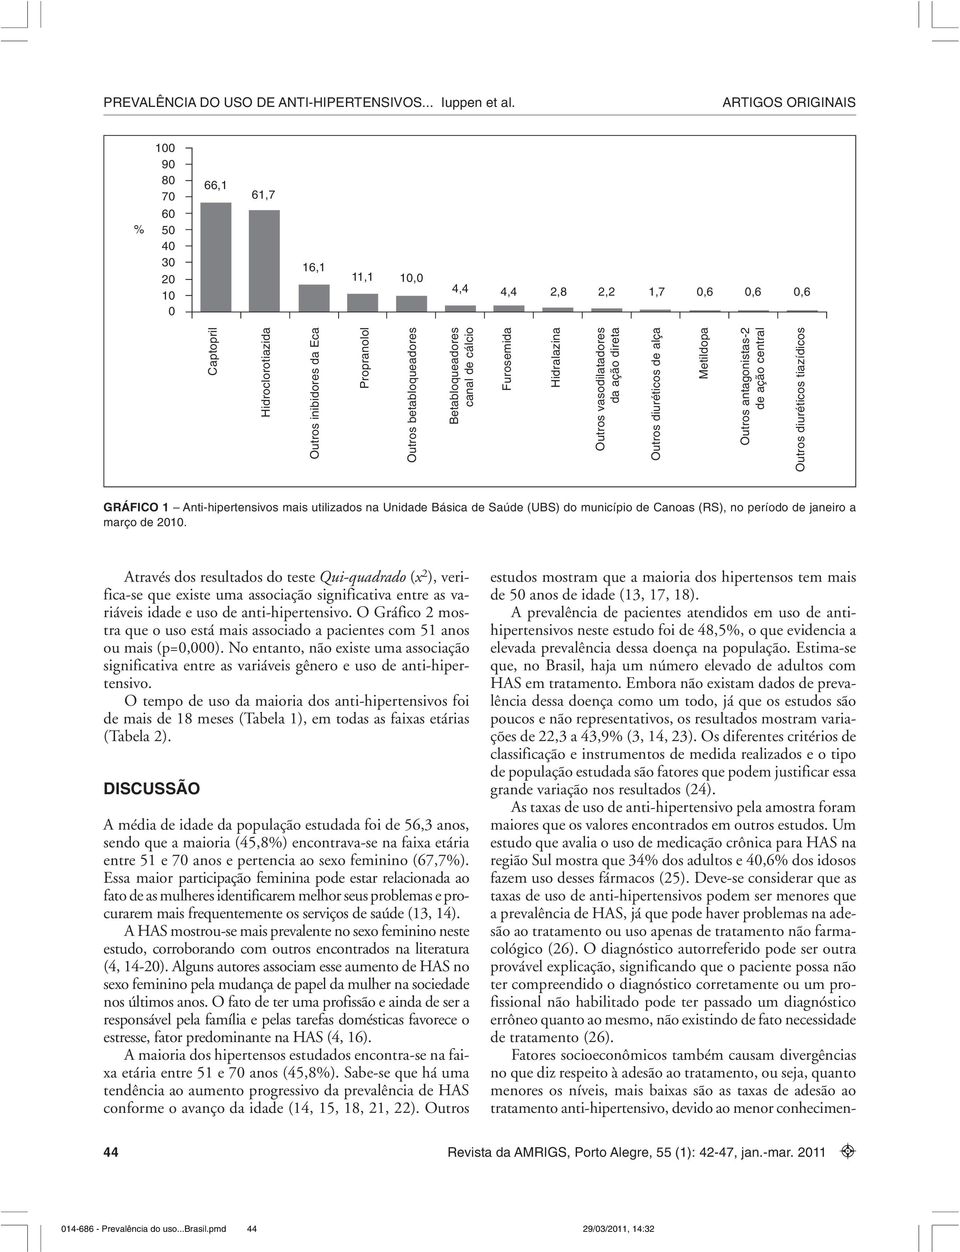 Anti-hipertensivos mais utilizados na Unidade Básica de Saúde (UBS) do município de Canoas (RS), no período de janeiro a março de 2010.